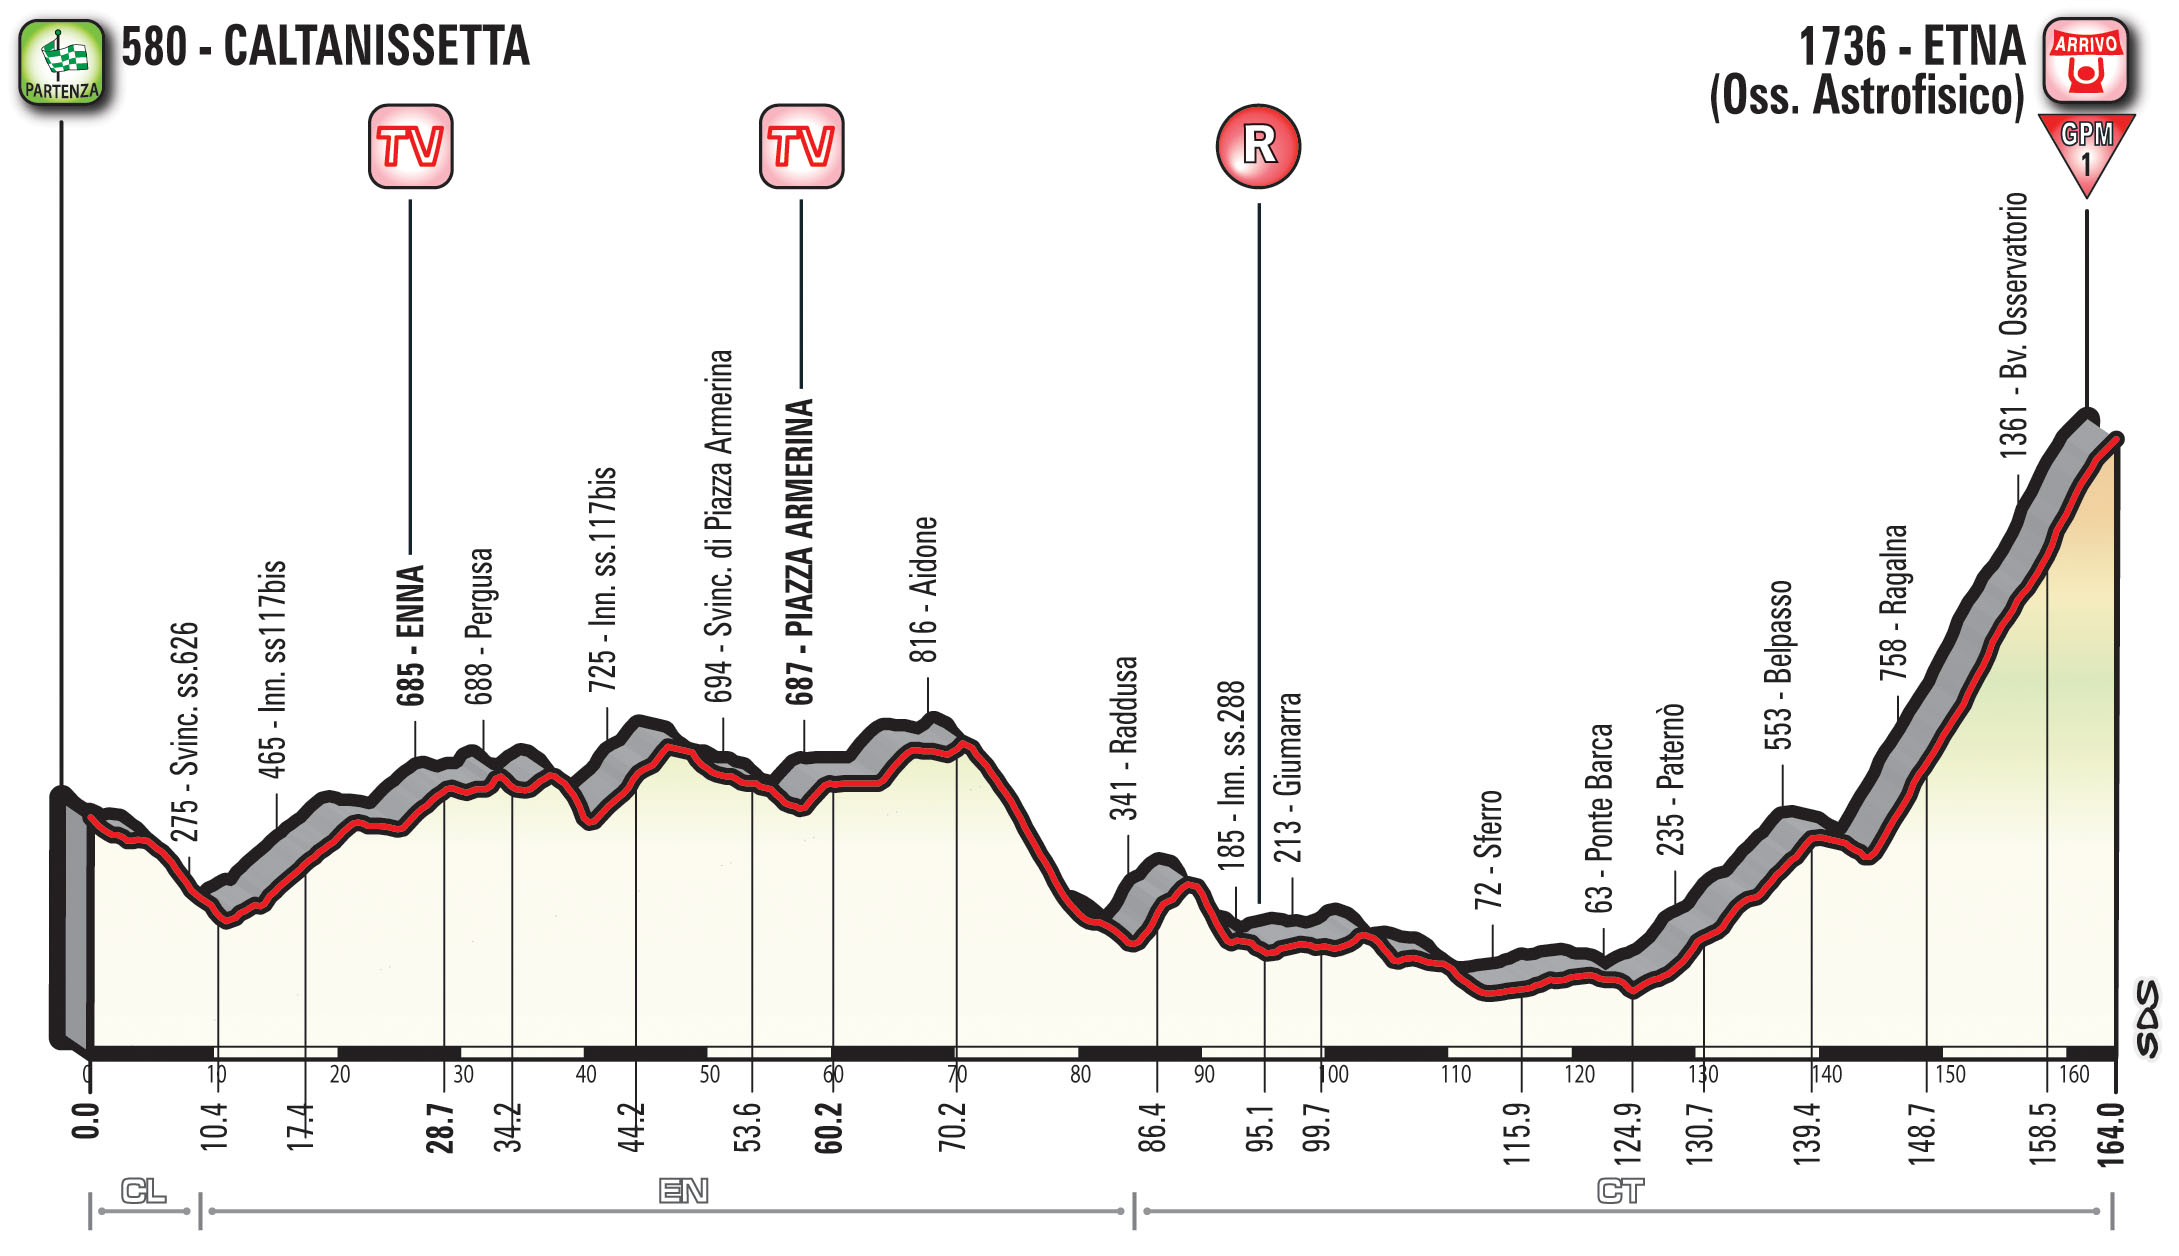 profil 6. etapu Giro d'Italia 2018